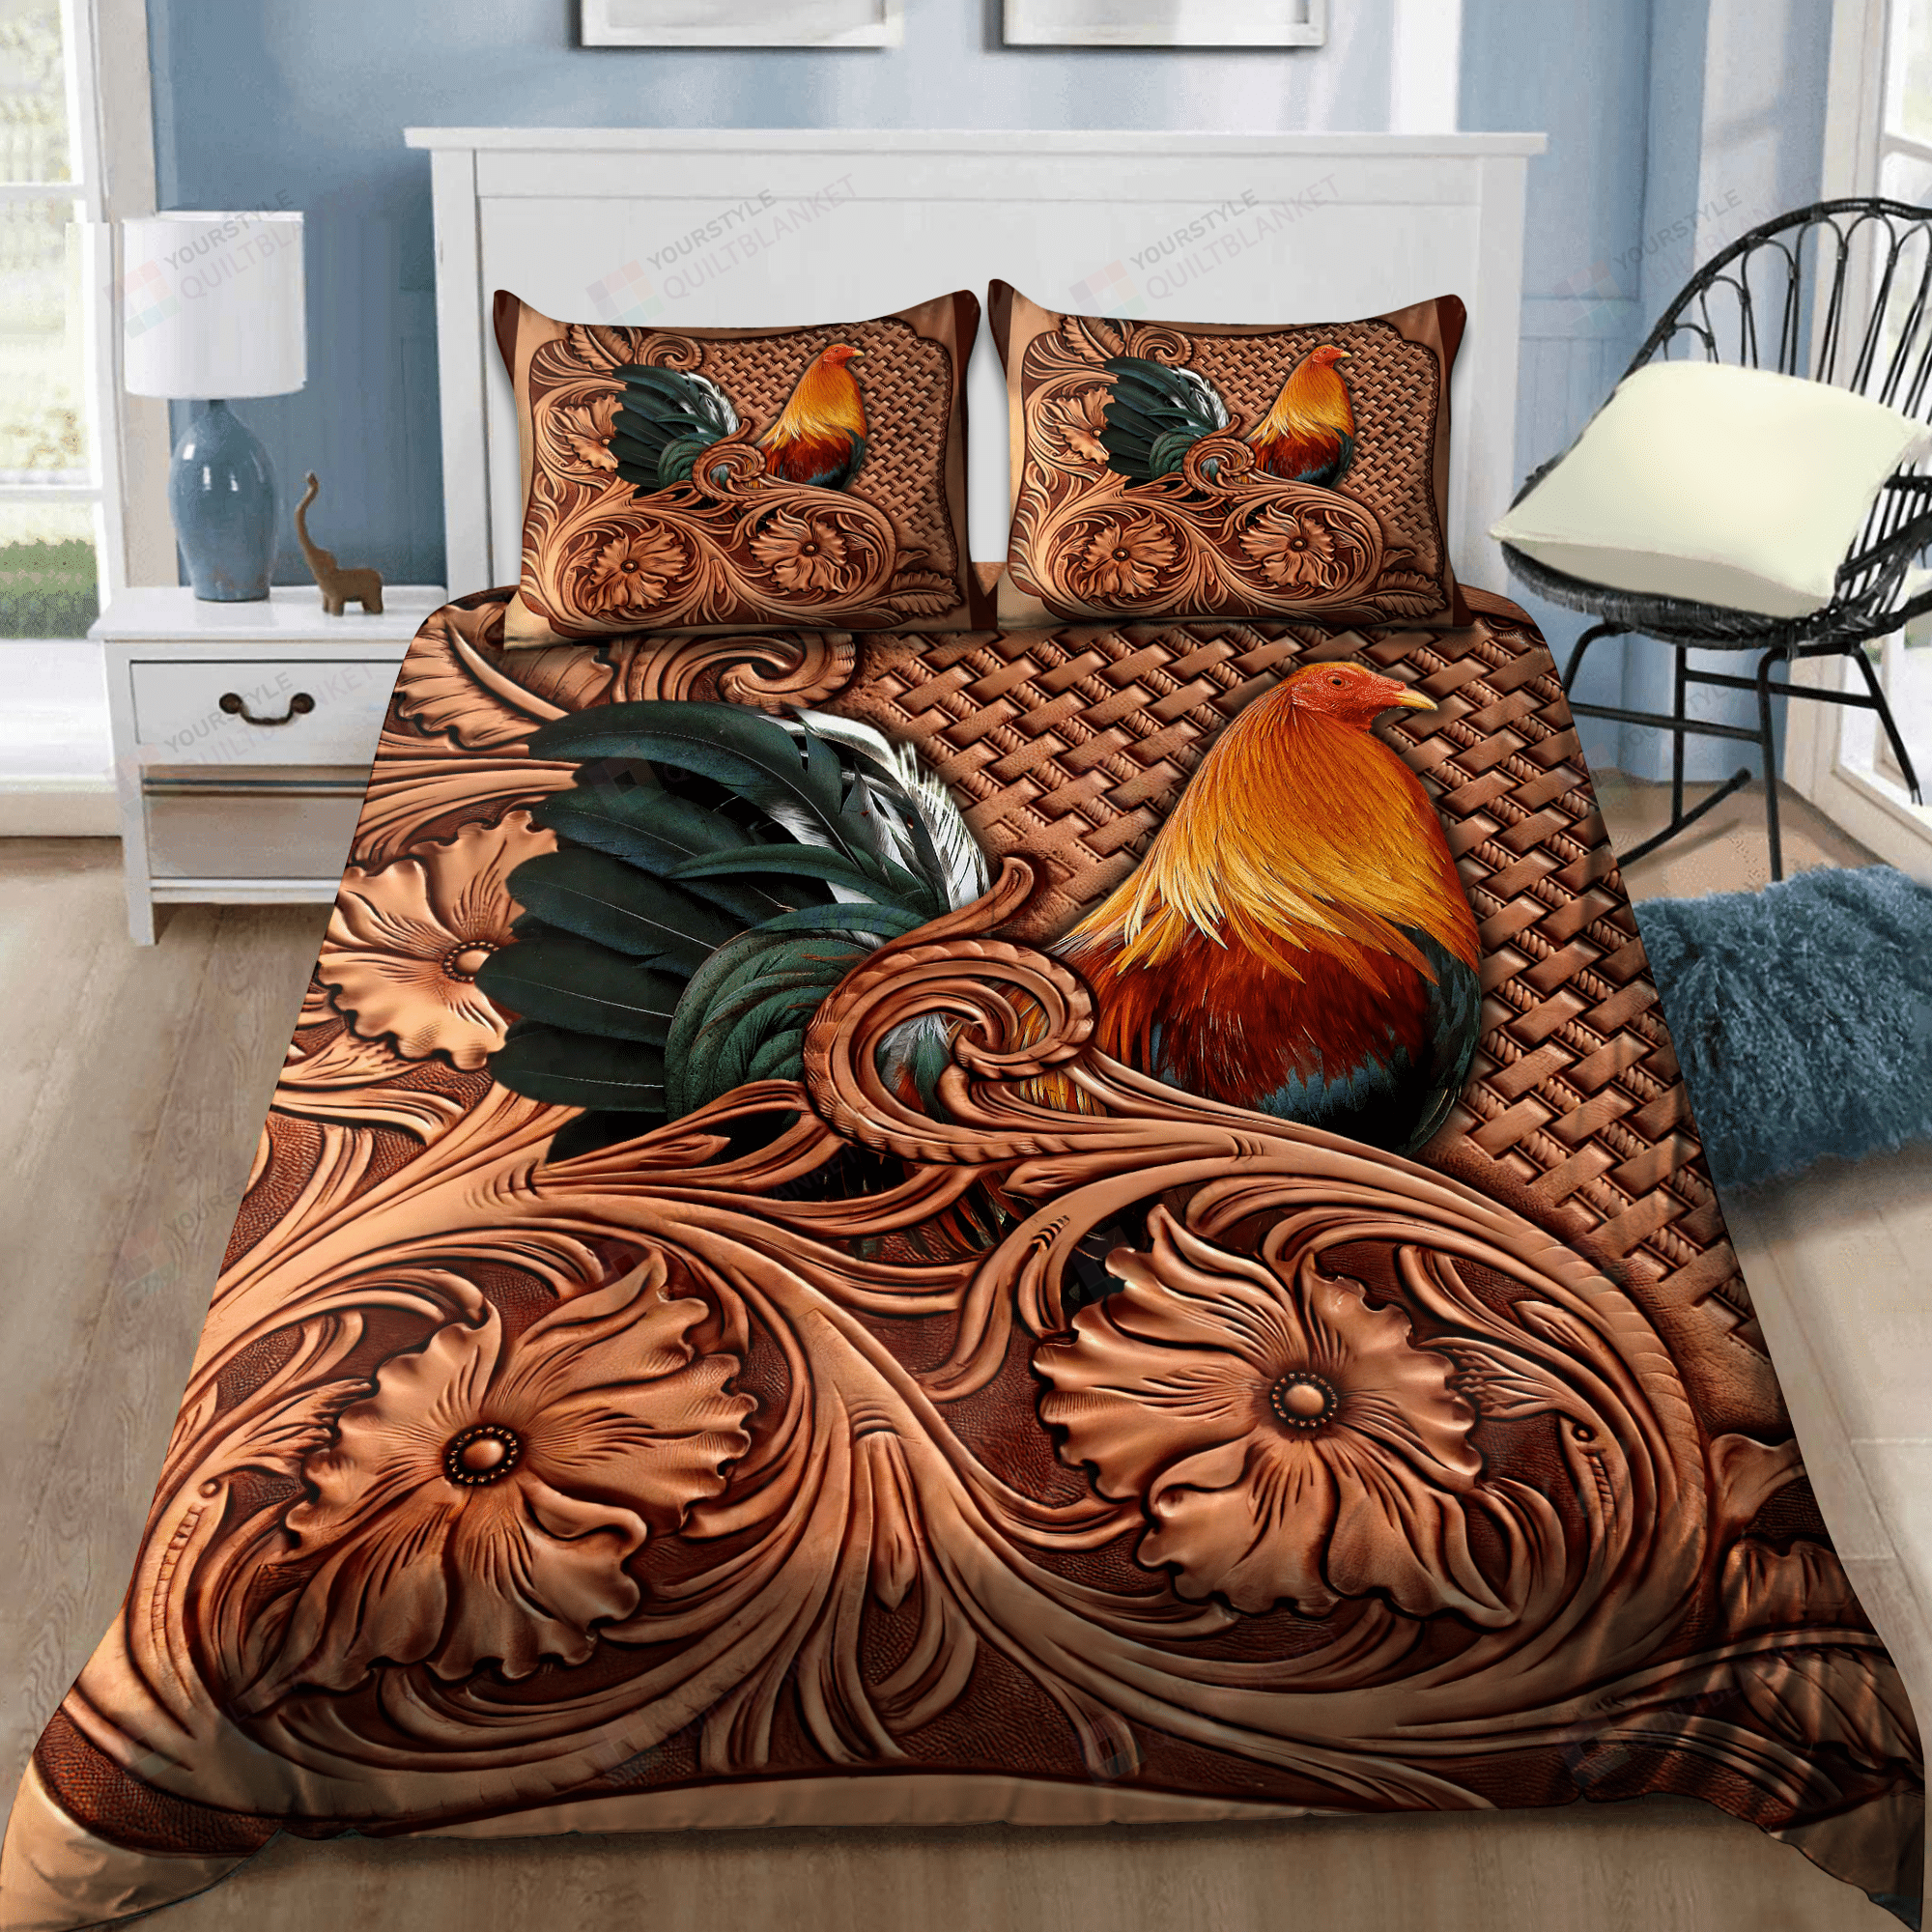 Rooster Bedding Set Bed Sheets Spread Comforter Duvet Cover Bedding Sets.Png